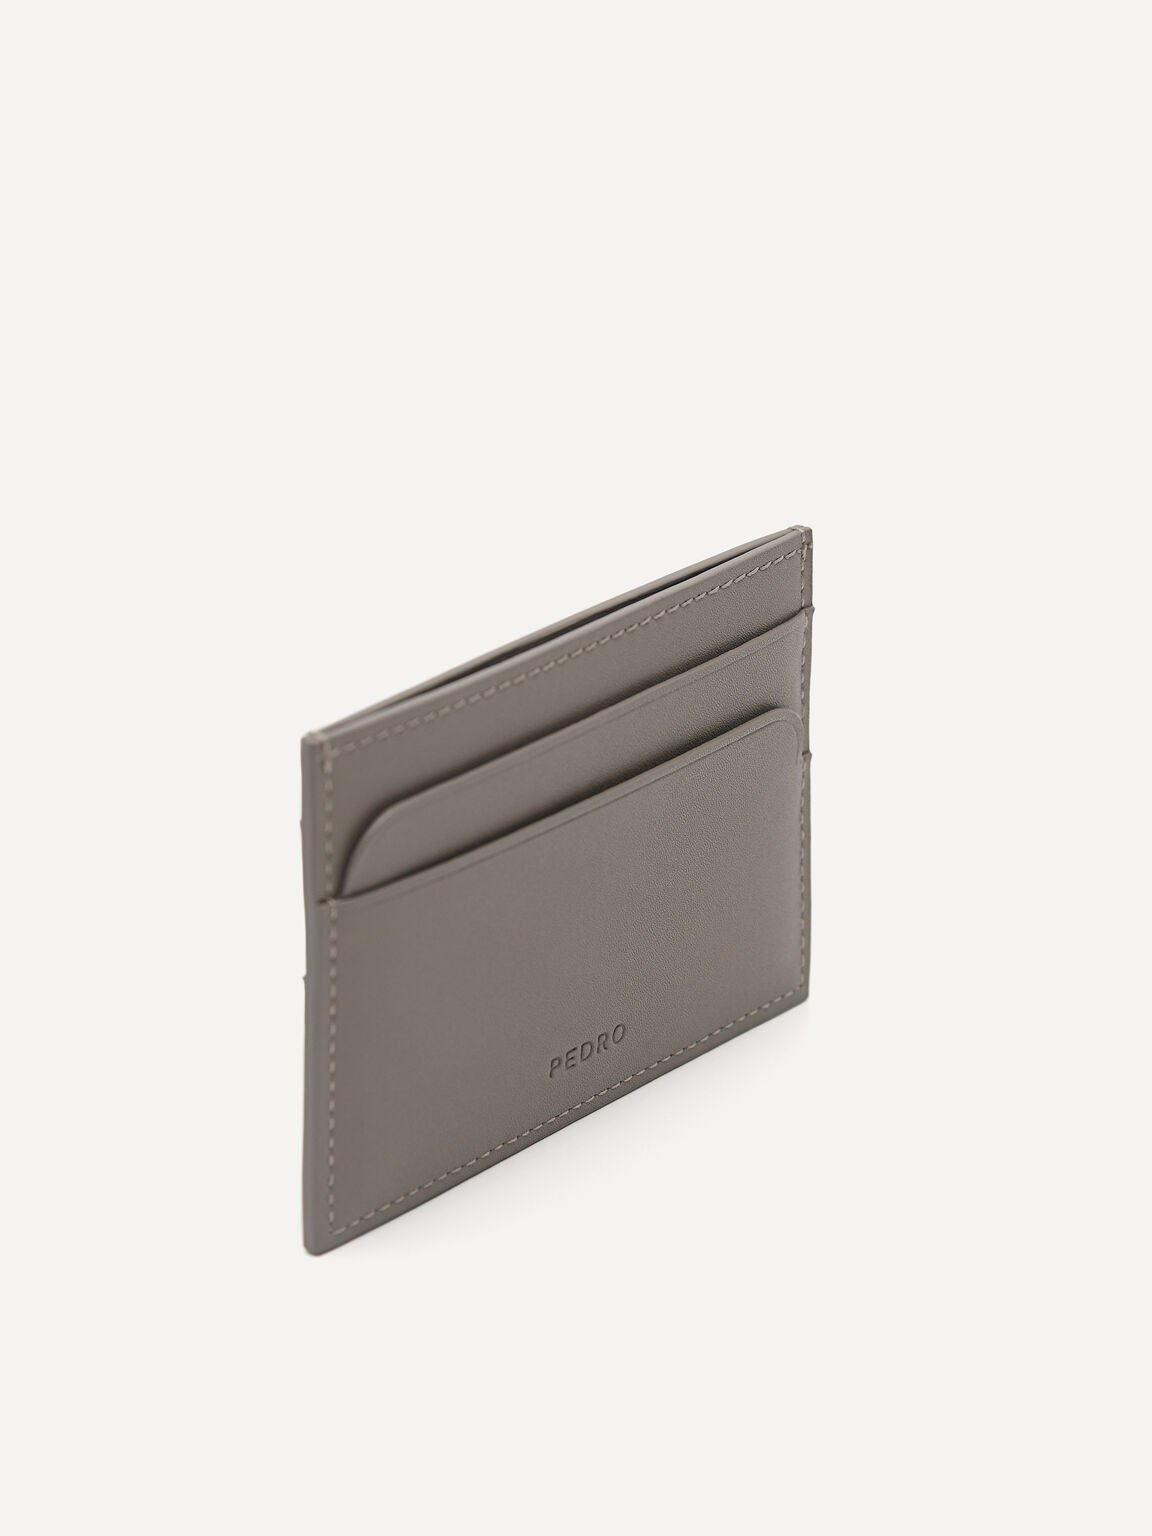 PEDRO Icon Mini Leather Card Holder, Taupe